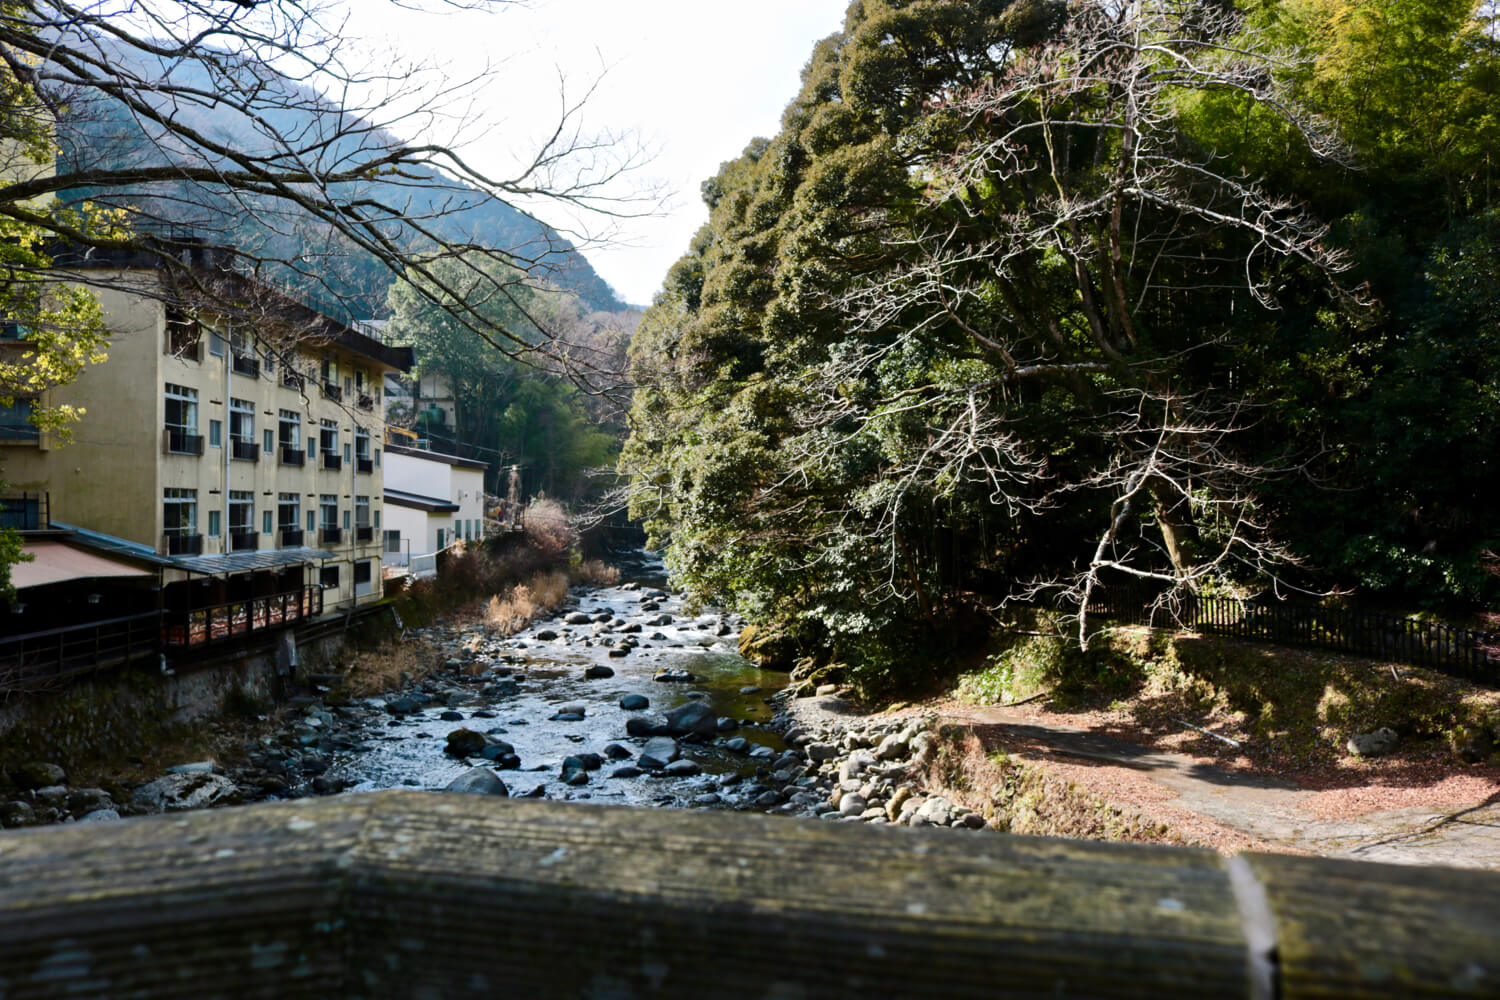 Nekko-gawa River as seen from the Yumichi